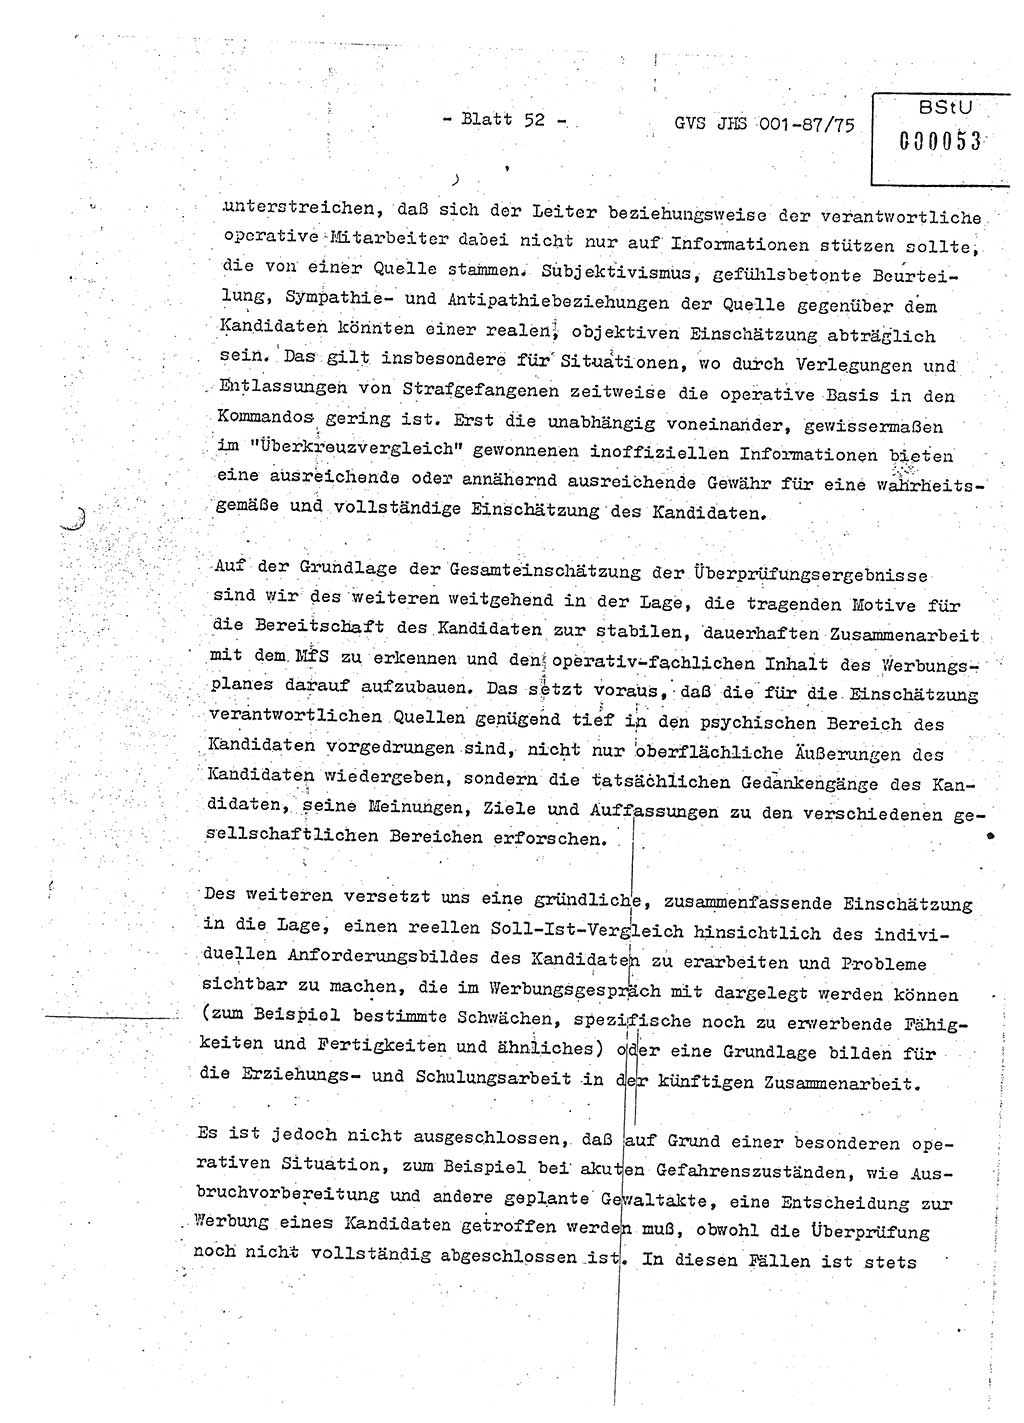 Diplomarbeit Hauptmann Volkmar Heinz (Abt. ⅩⅣ), Oberleutnant Lothar Rüdiger (BV Lpz. Abt. Ⅺ), Ministerium für Staatssicherheit (MfS) [Deutsche Demokratische Republik (DDR)], Juristische Hochschule (JHS), Geheime Verschlußsache (GVS) o001-87/75, Potsdam 1975, Seite 52 (Dipl.-Arb. MfS DDR JHS GVS o001-87/75 1975, S. 52)